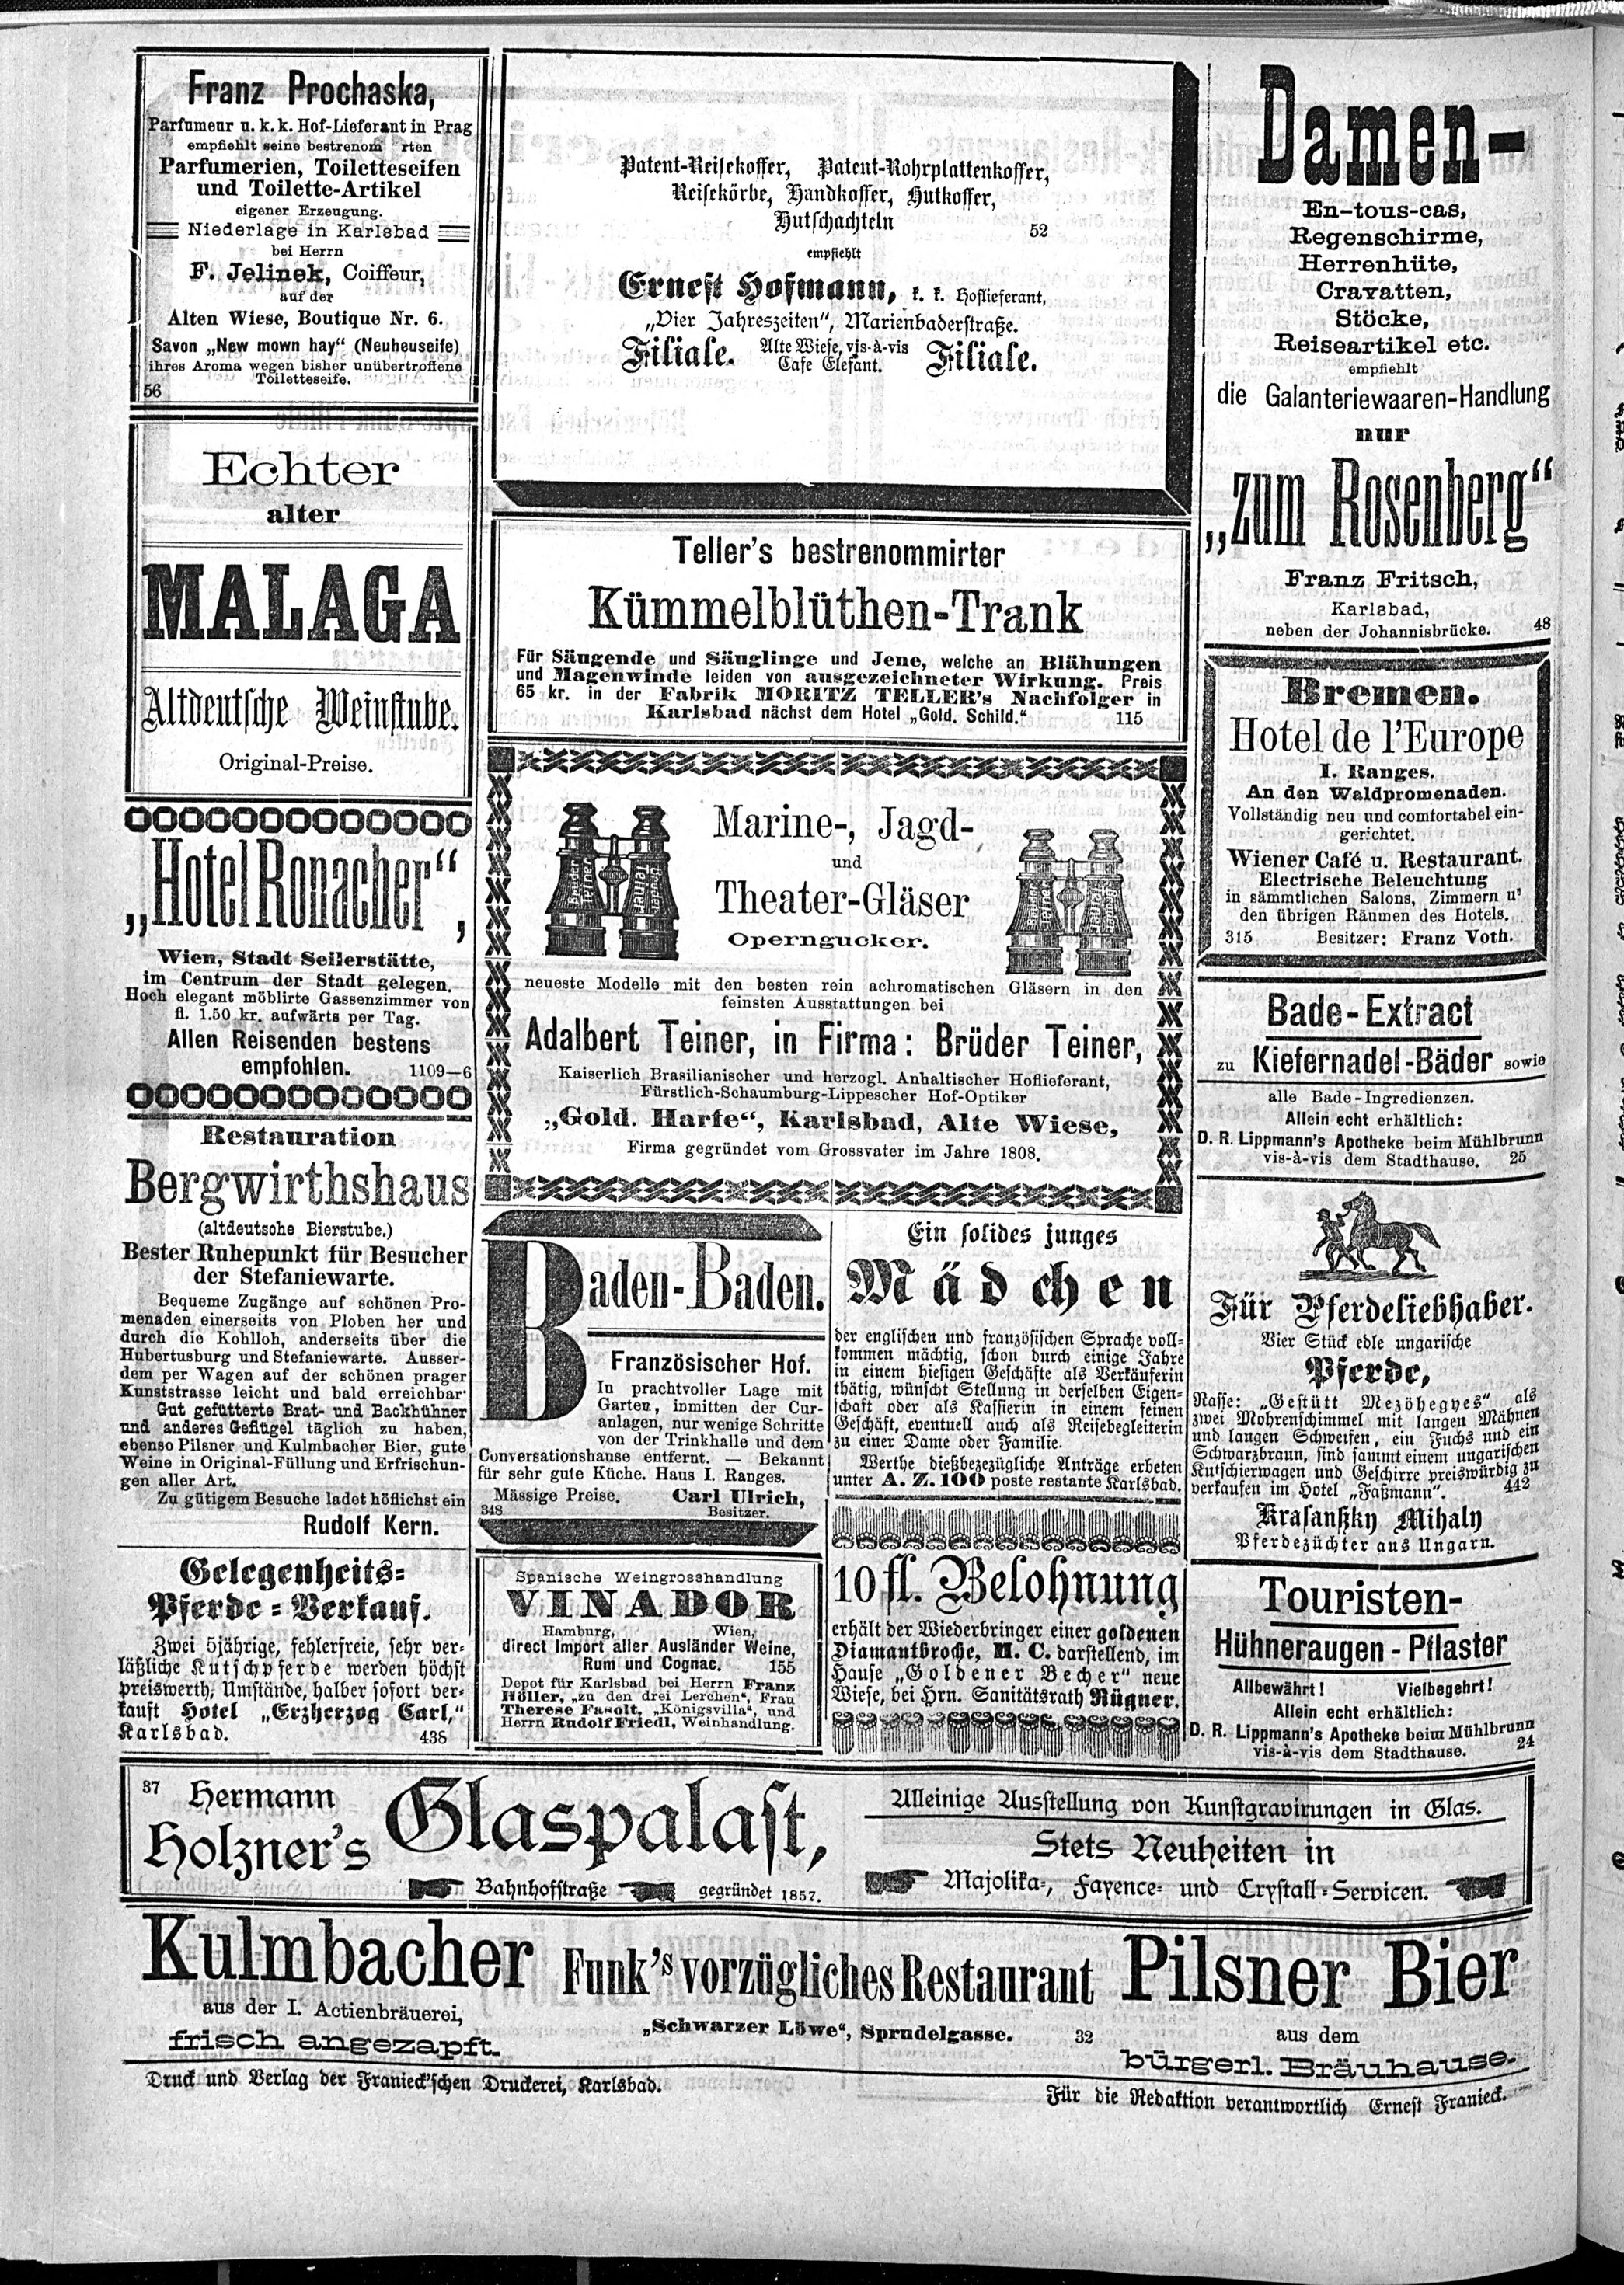 4. karlsbader-badeblatt-1889-08-21-n96_2840